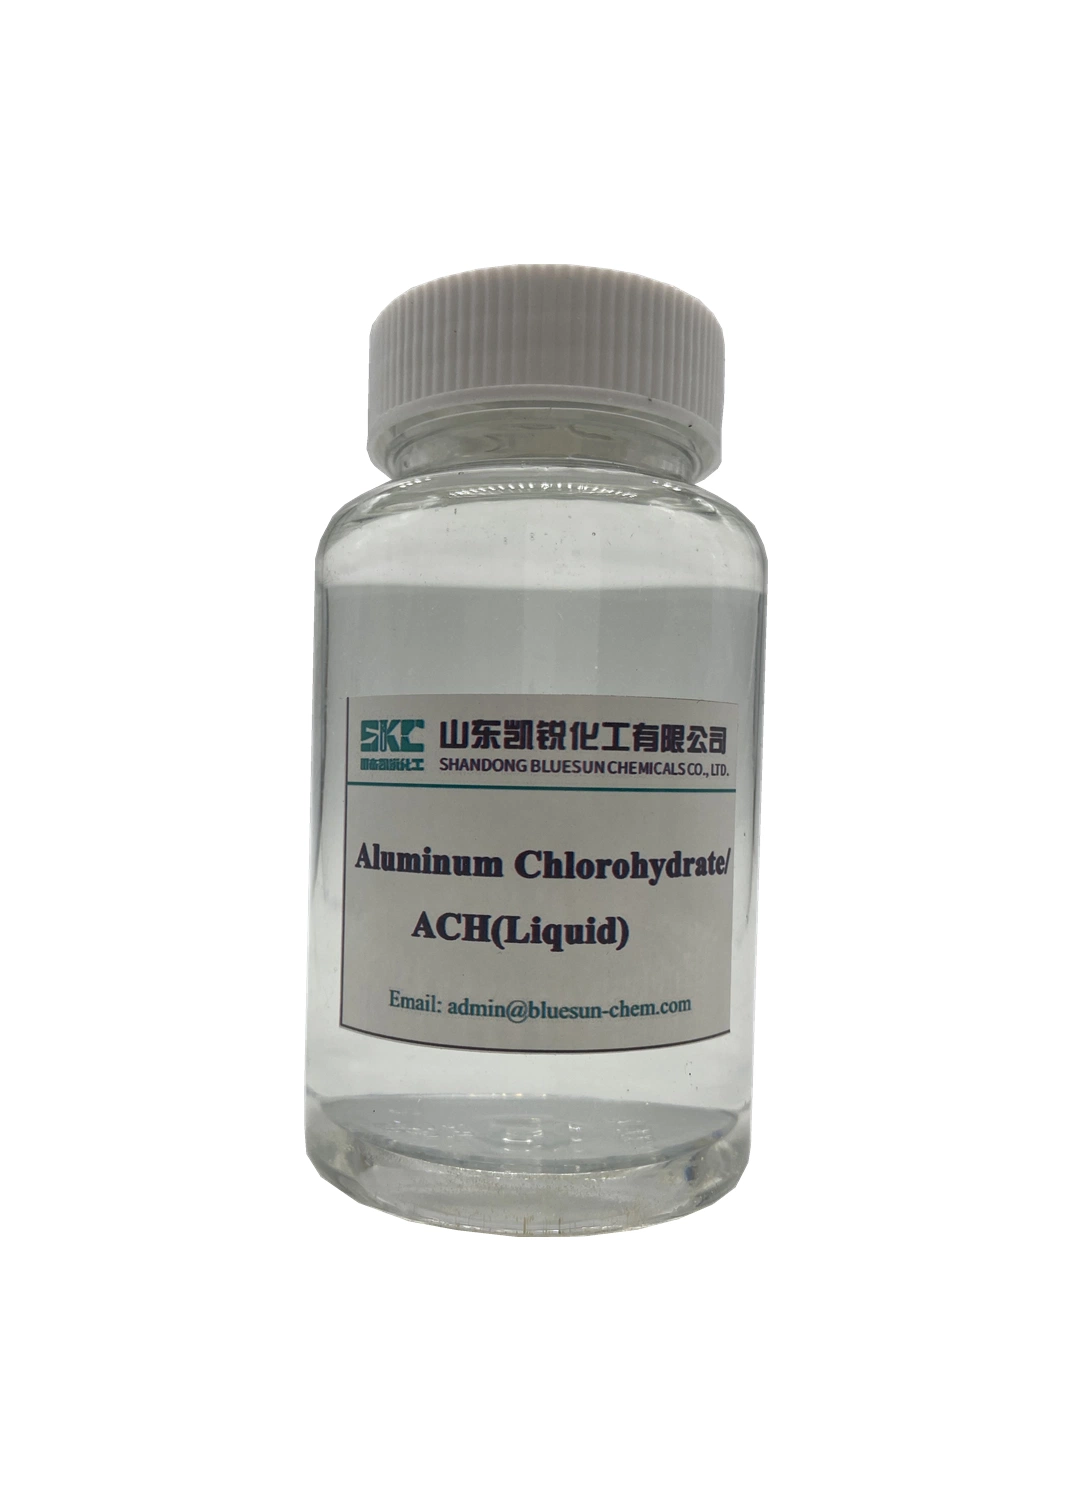 Agent floculant de haute performance Ach liquide aluminium chlorohydraté pour le traitement de l'eau